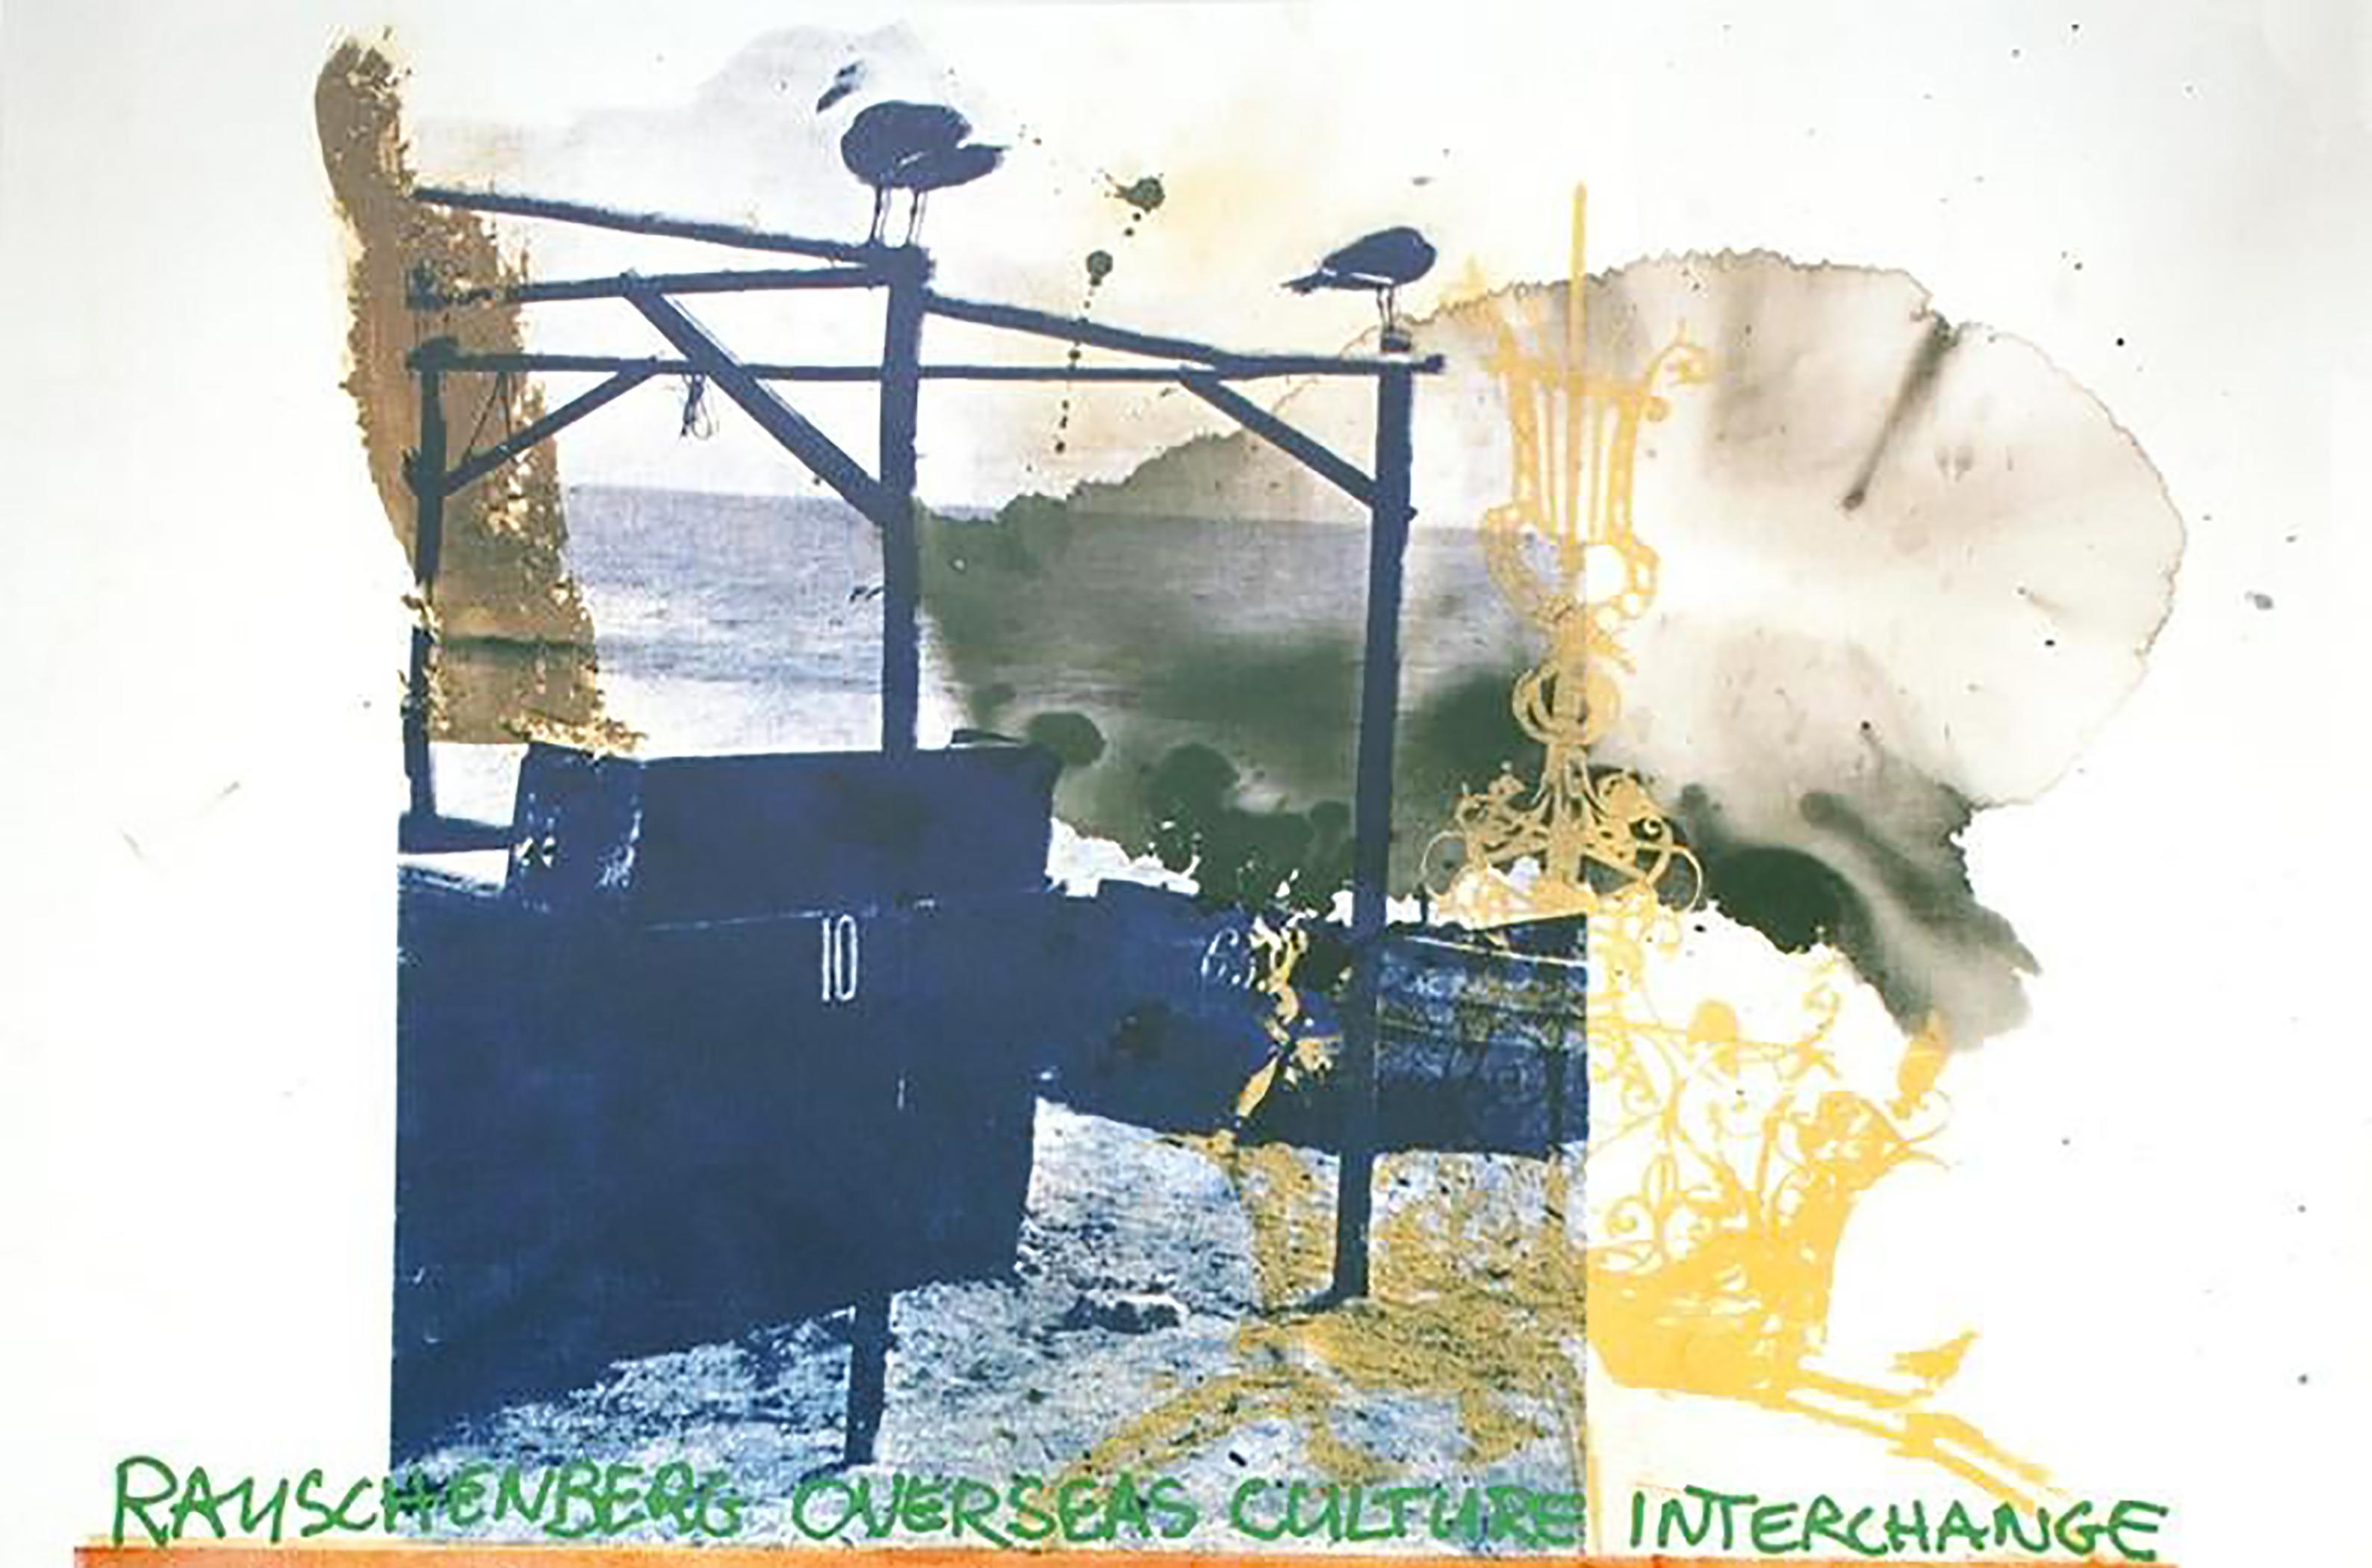 Chile SIGNED 34.5" x 24" Offset Lithograph 1985 Pop ROBERT RAUSCHENBERG ROCI 